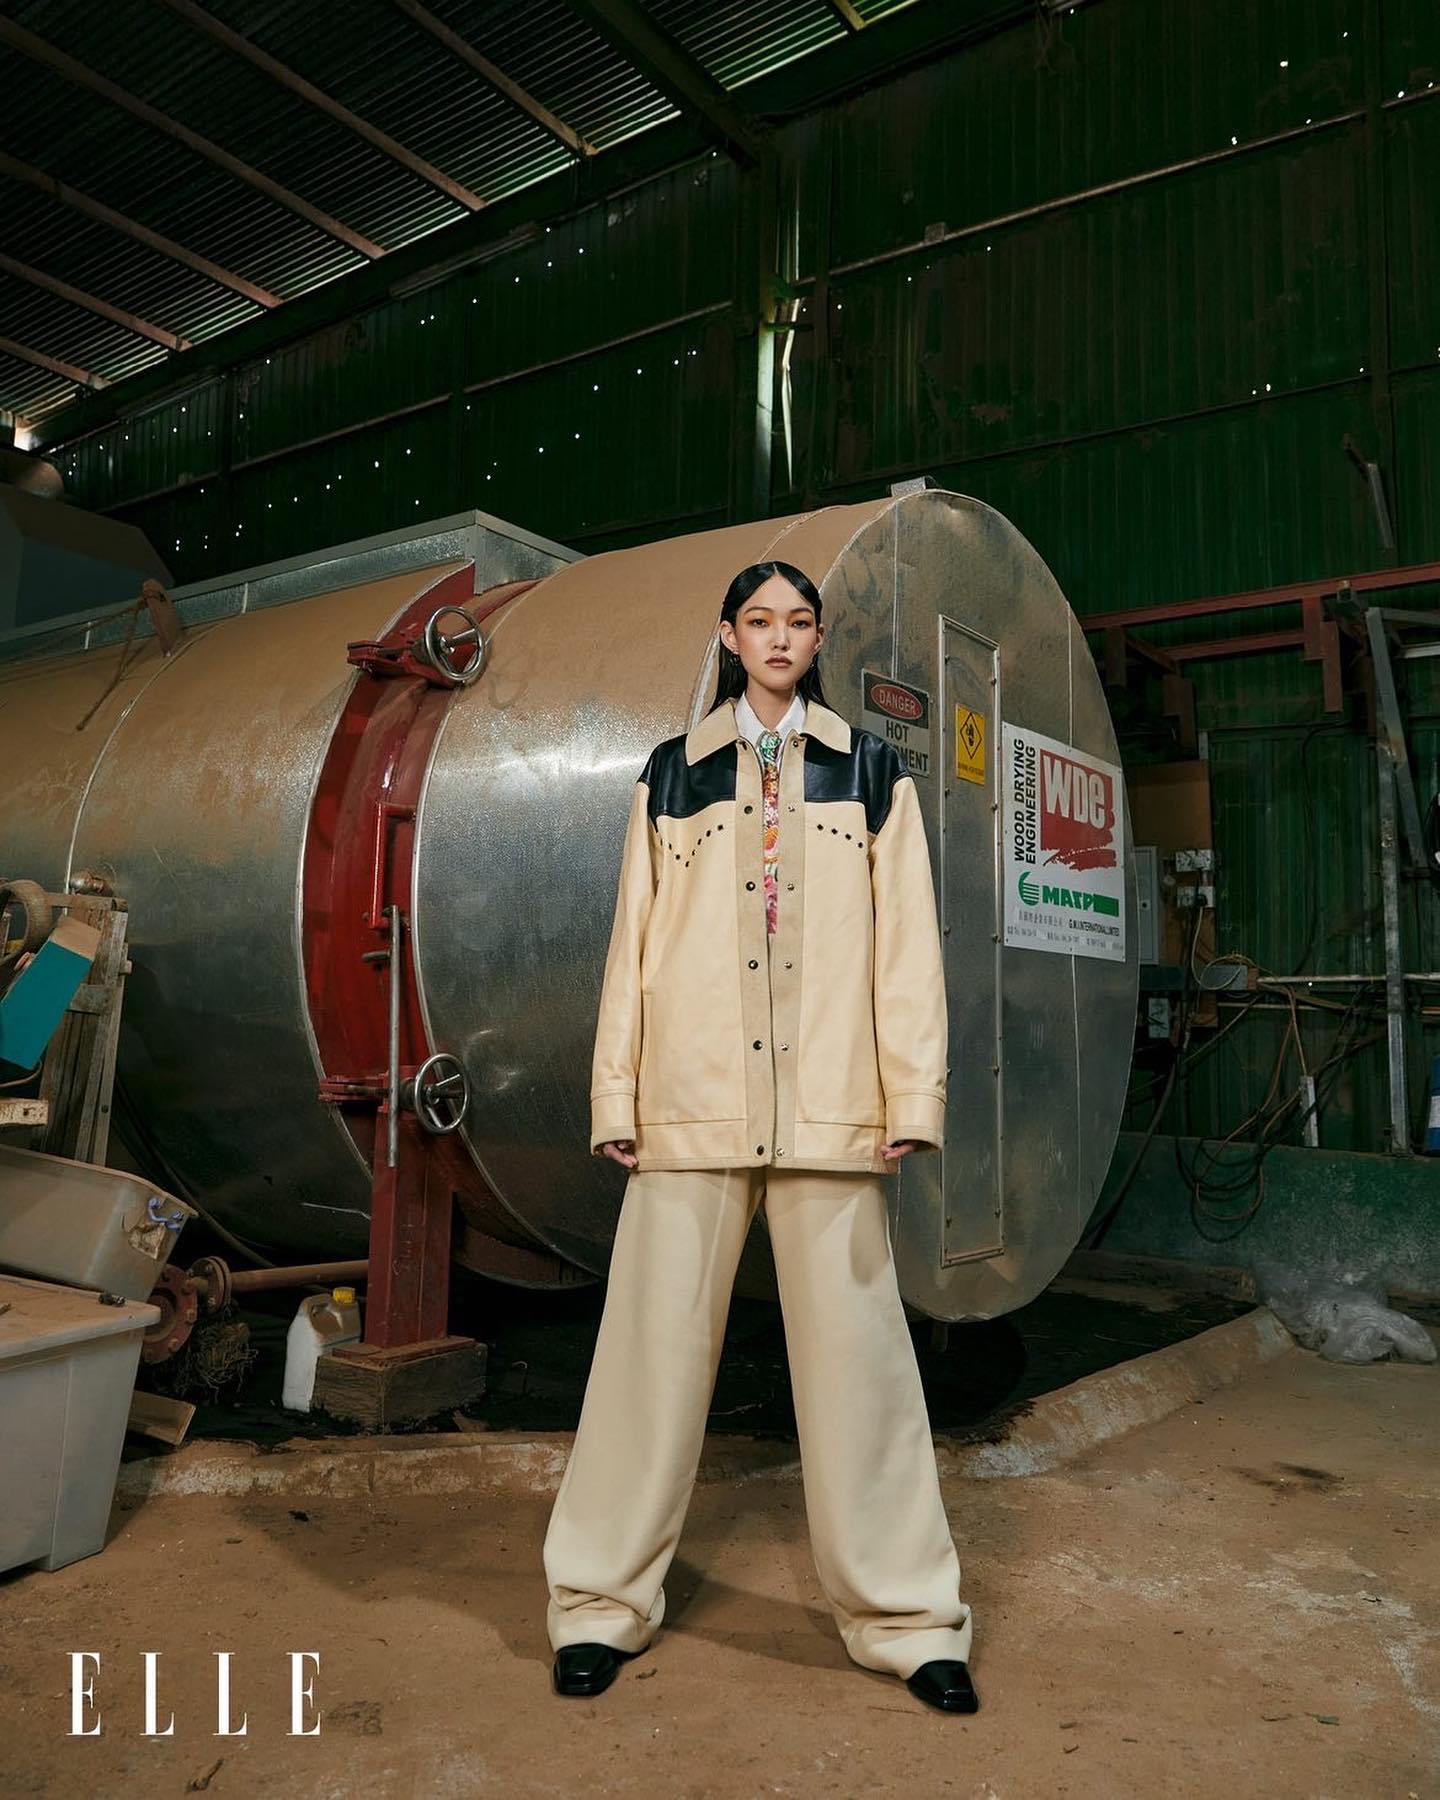 这幅照片摘自 2020 年 9 月份的著名国际时尚杂志《ELLE》，背景是一台 6 立方米的「达意」真空乾燥窑。